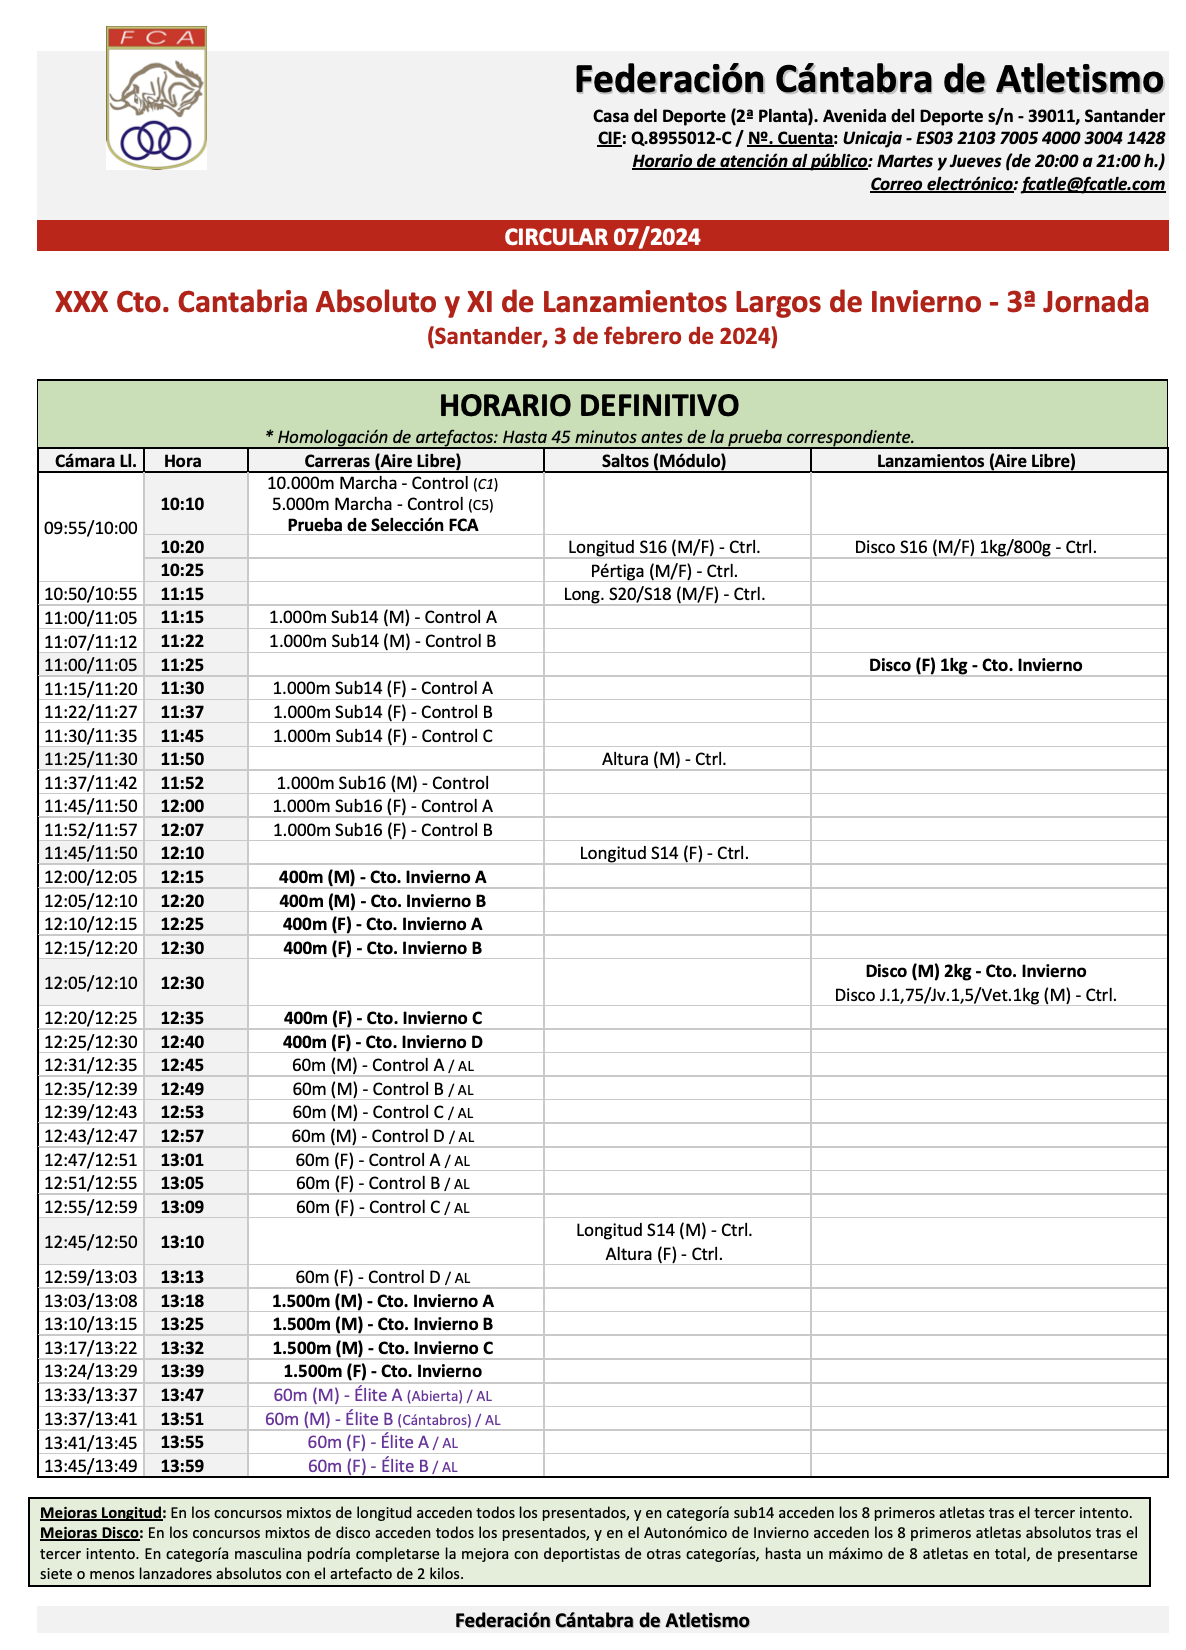 XXX Campeonato de Cantabria Absoluto y XI de Lanzamientos Largos de Invierno - 3ª Jornada @ Santander, Cantabria